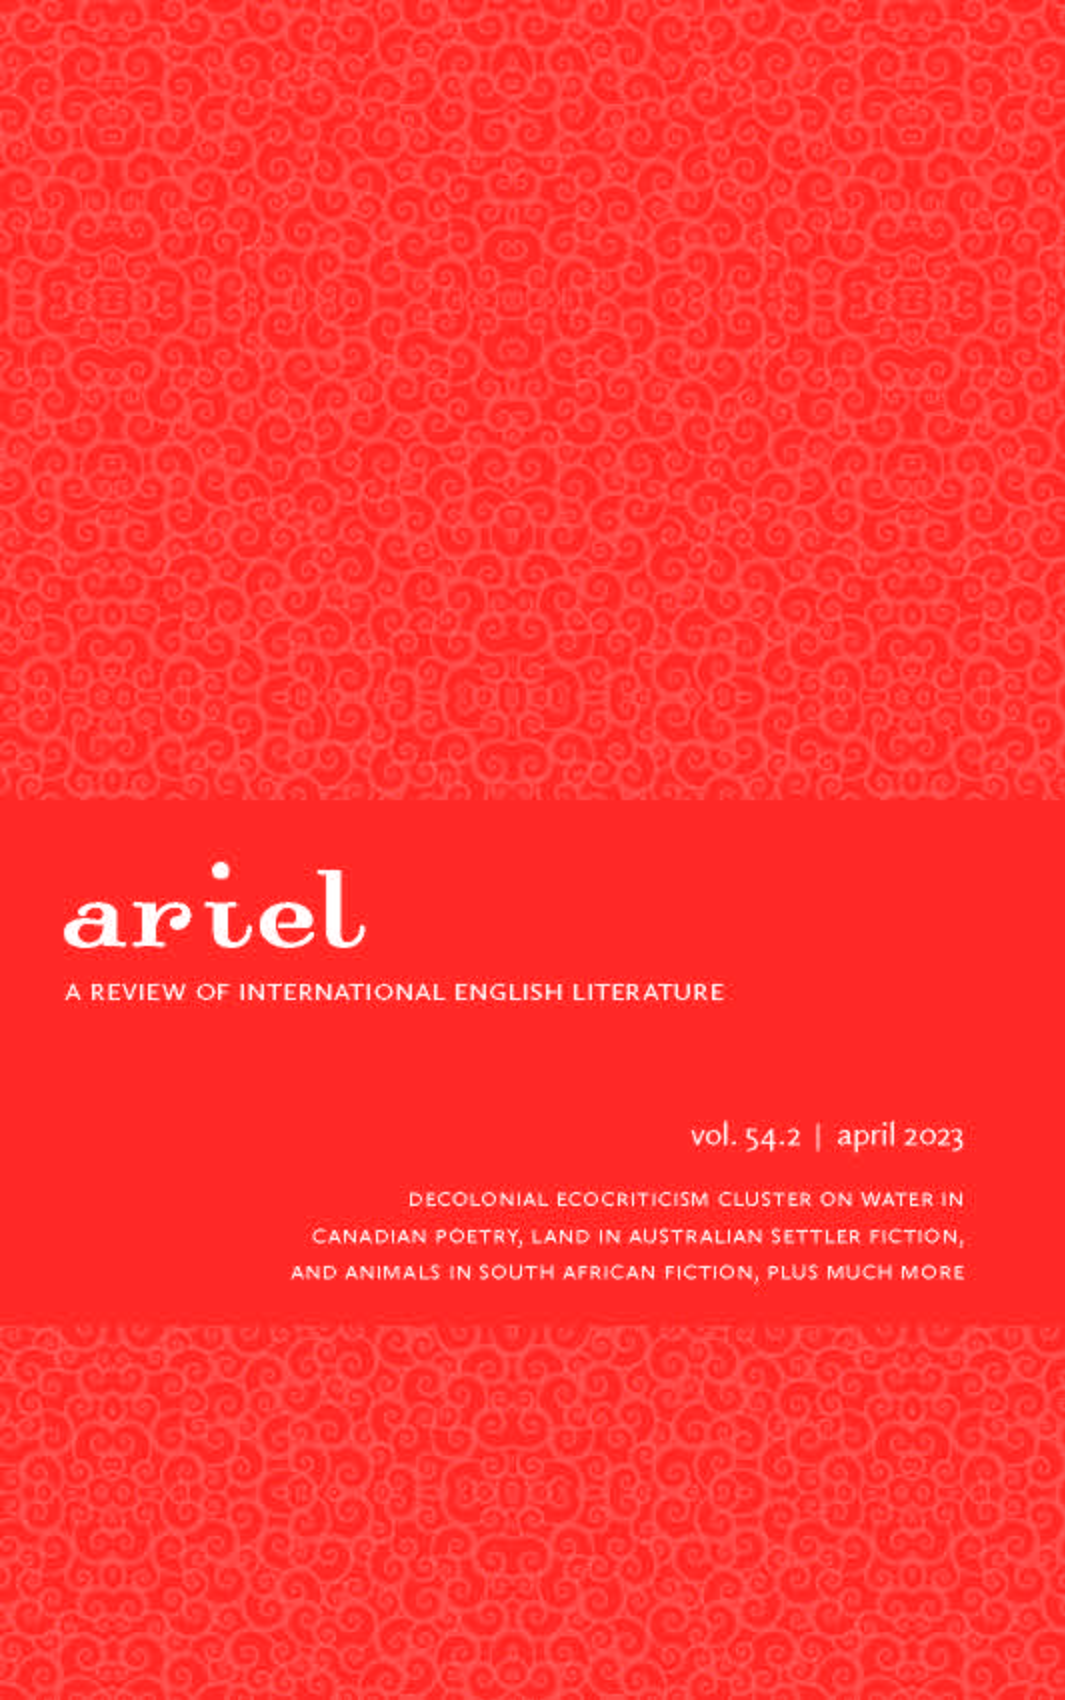 ARIEL 54.2 | April 2023